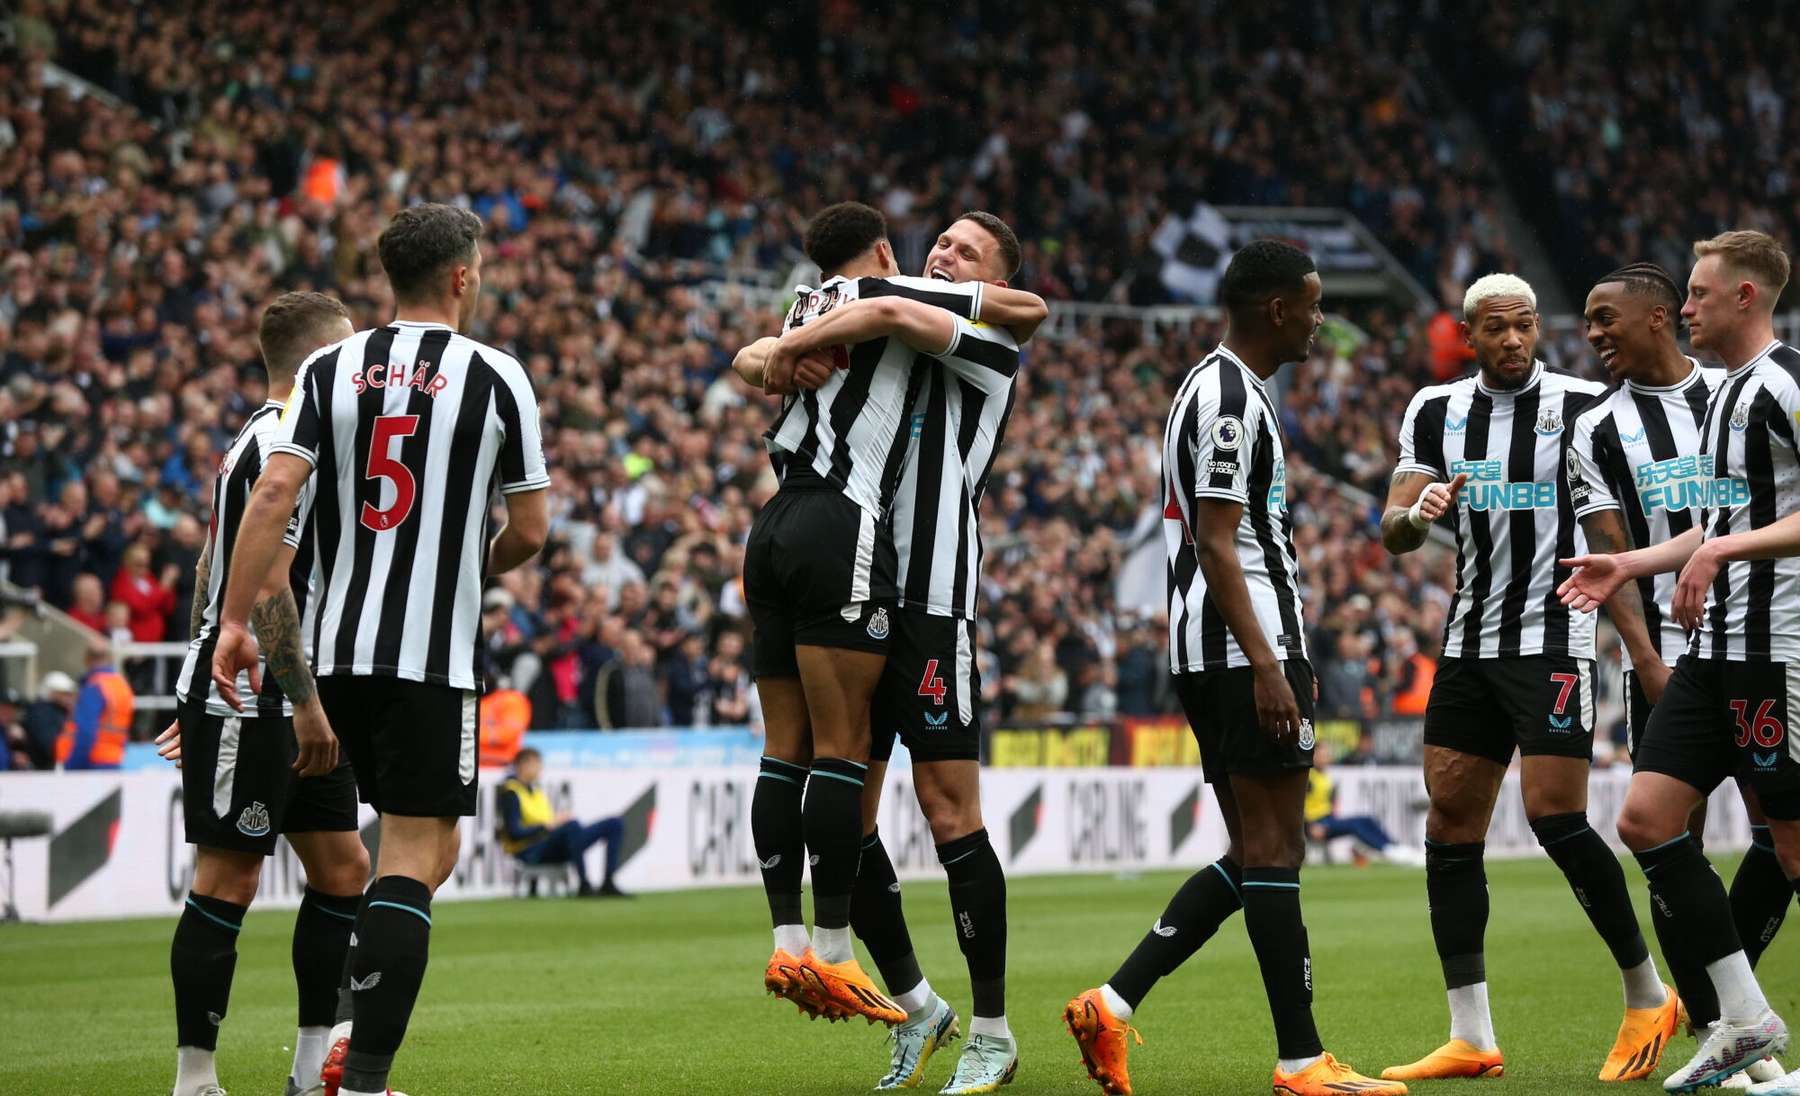 Newcastle jalgpallurid väravat tähistamas